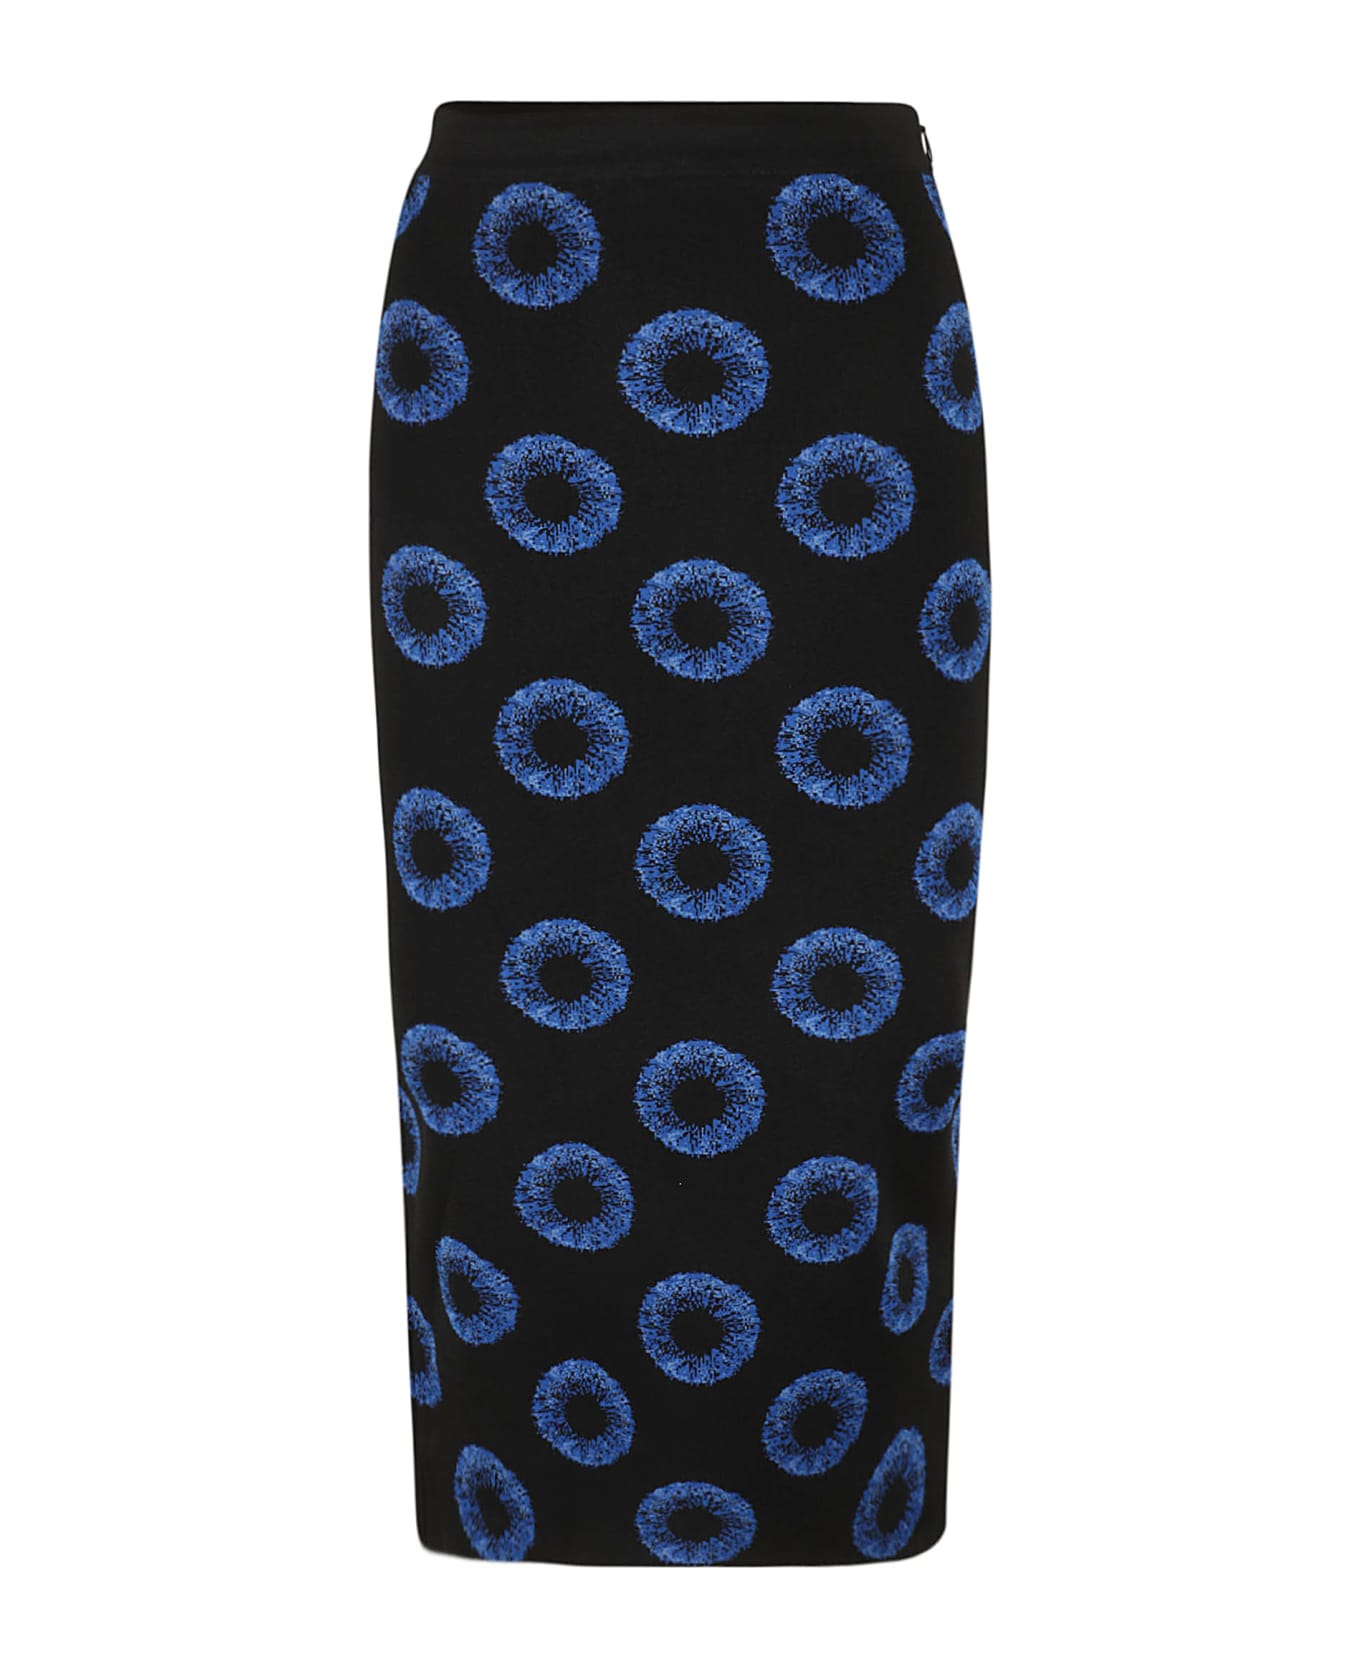 Alexander McQueen Iris Jacquard Knit Pencil Skirt - Black/Blue